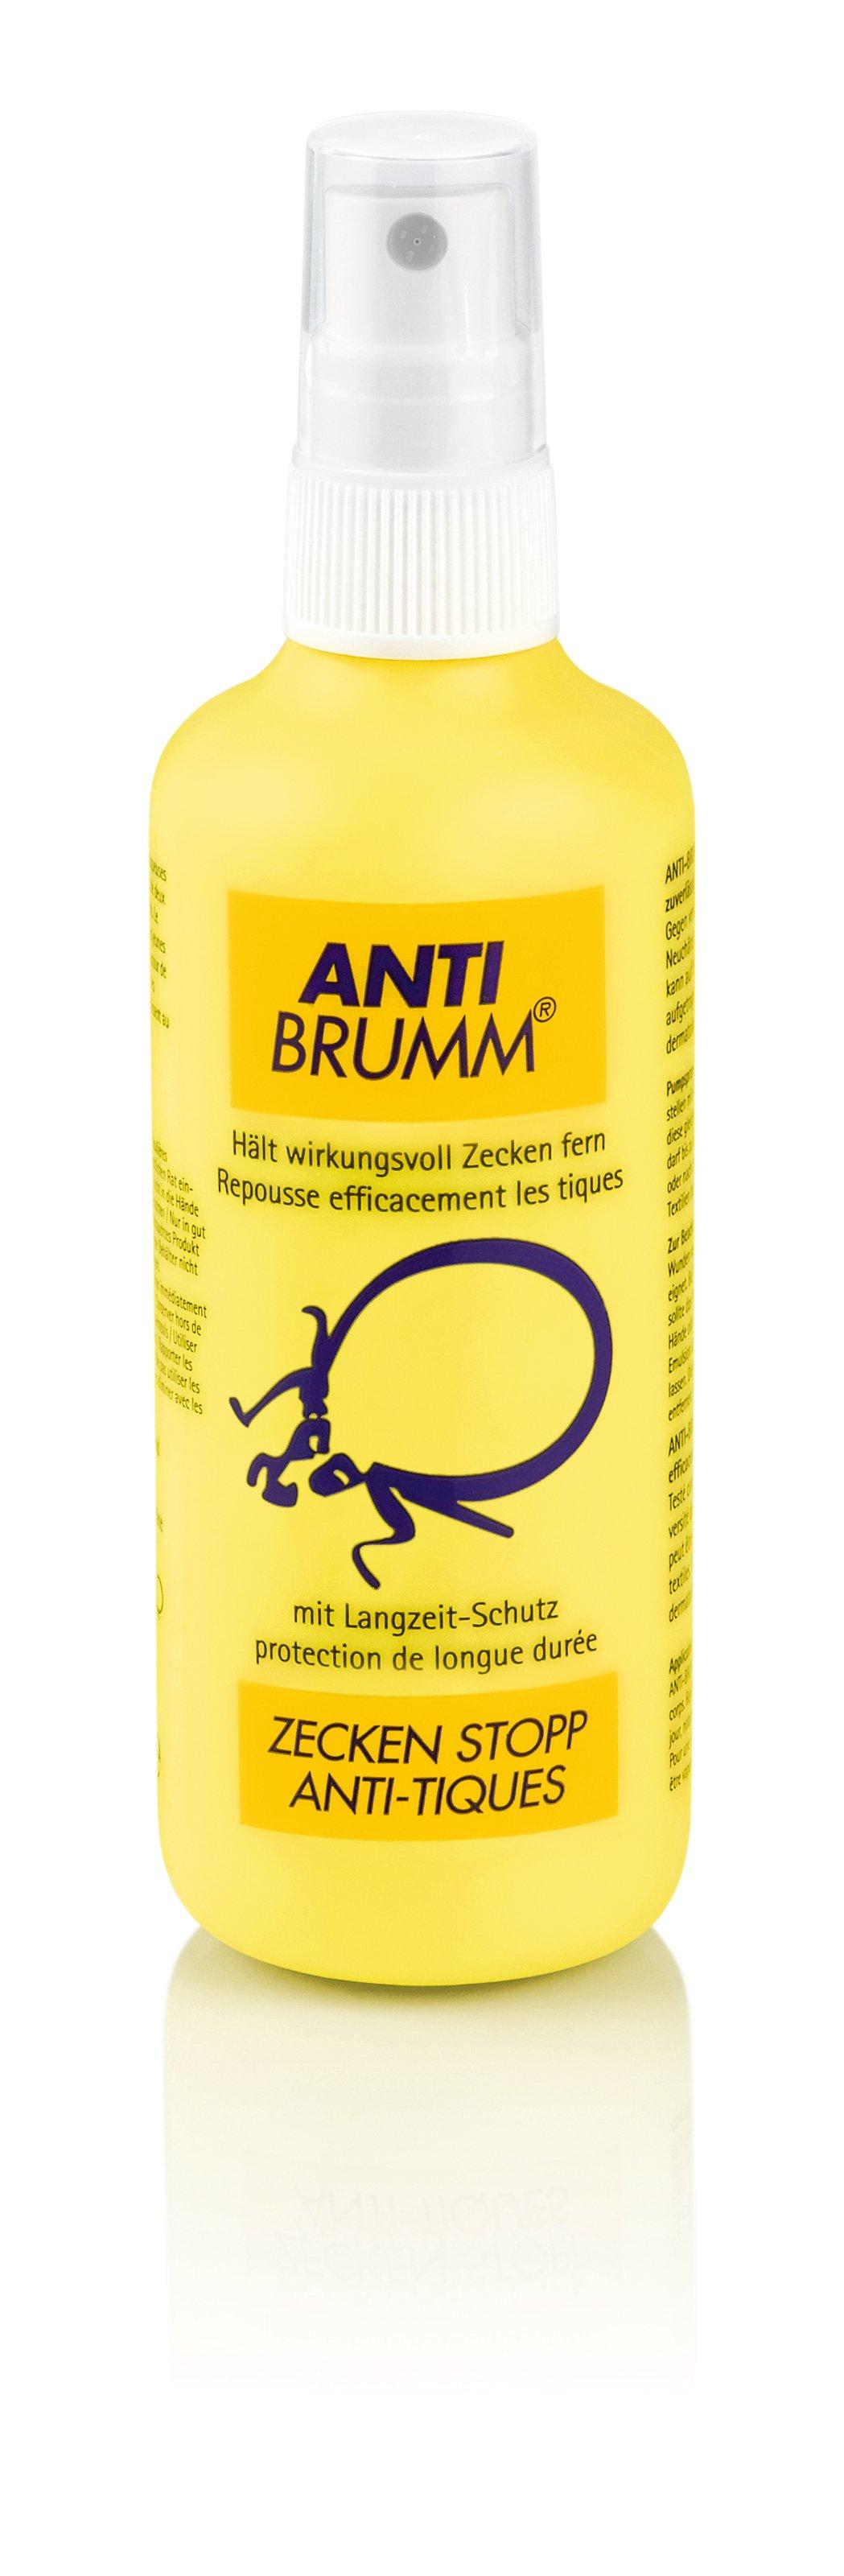 Anti-Brumm Zecken Stopp Spray Zecken Stop 